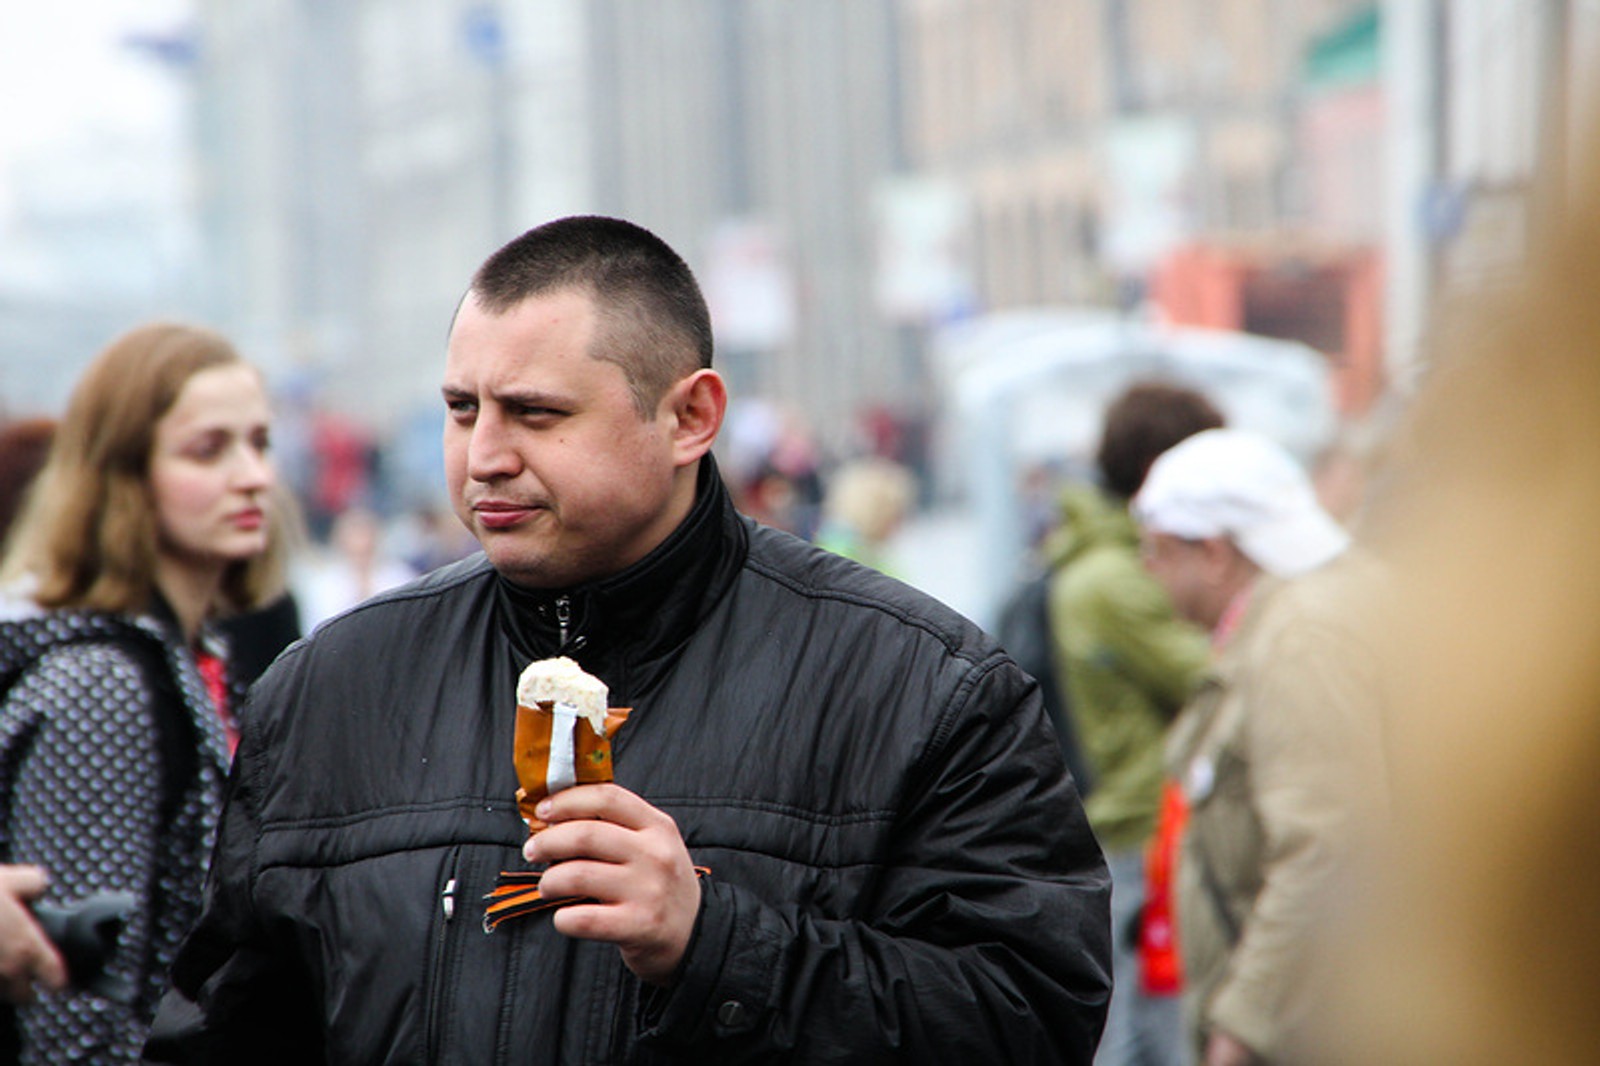 Замначальника Центра «Э» Москвы стал Алексей Окопный. Он преследовал активистов на митингах, его связывали с убийством нацбола